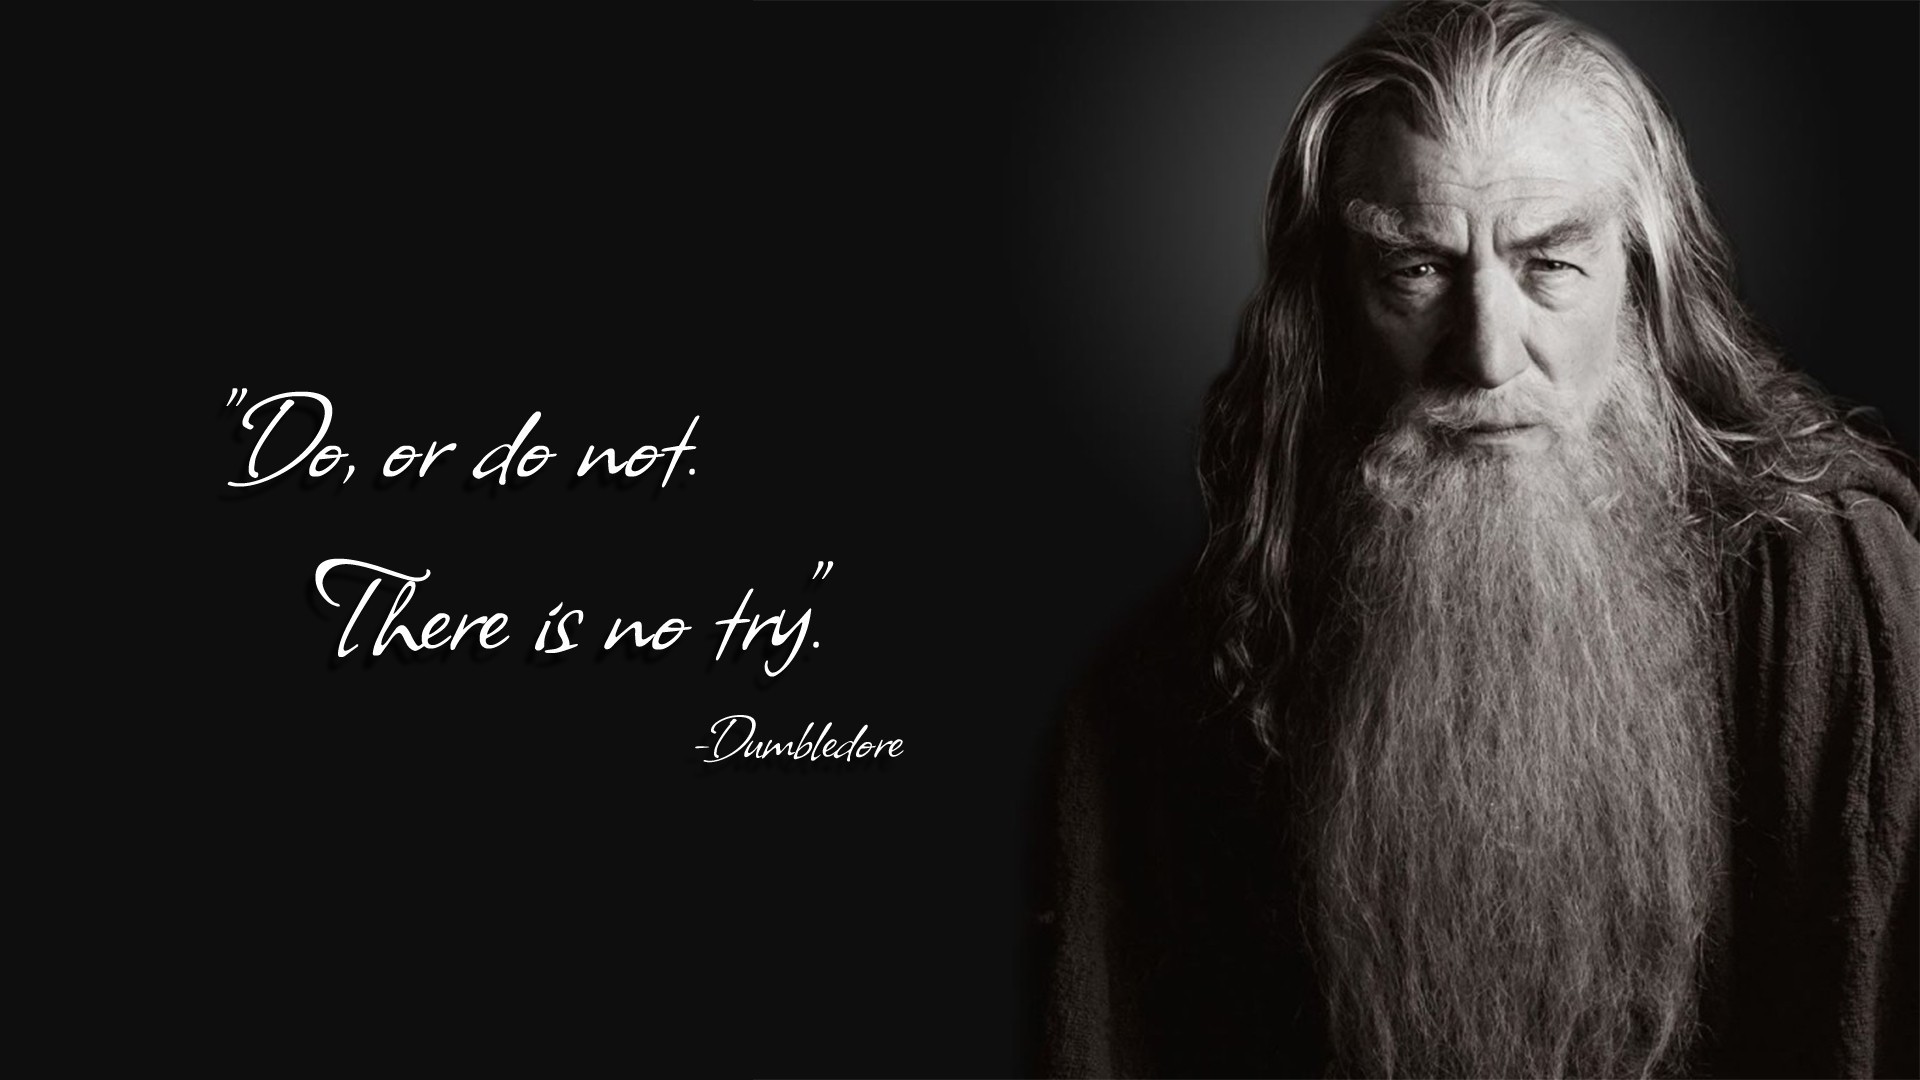 General 1920x1080 parody Harry Potter humor Gandalf quote Yoda Ian McKellen Albus Dumbledore crossover